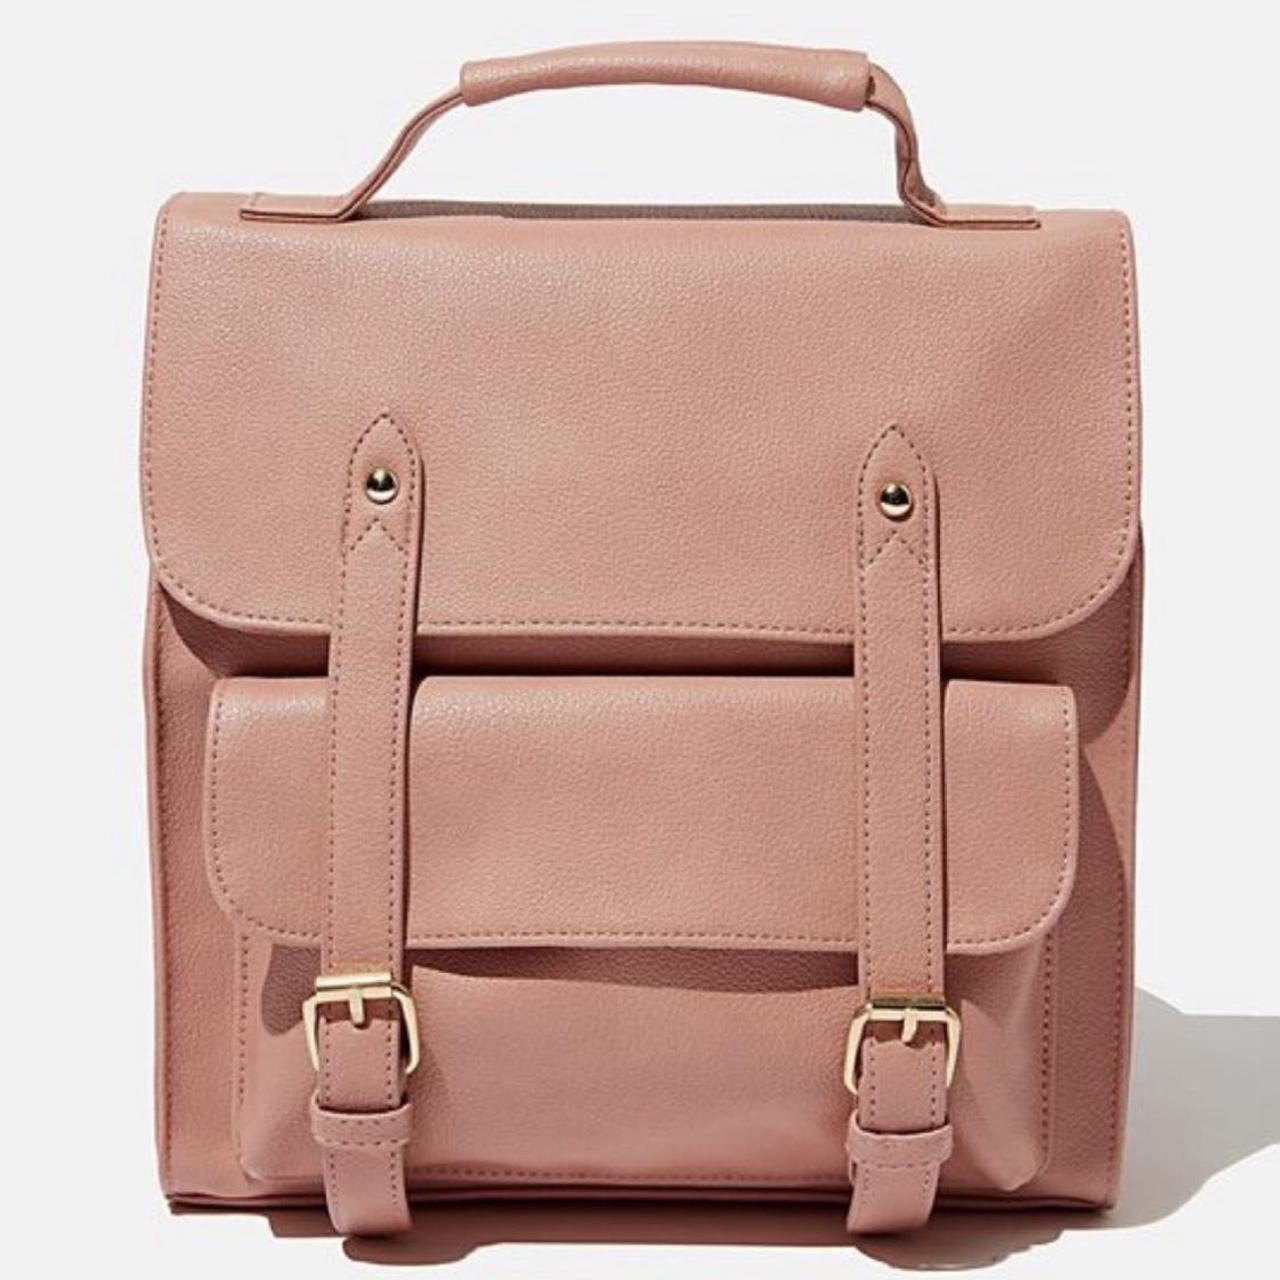 Typo Women's Pink Bag